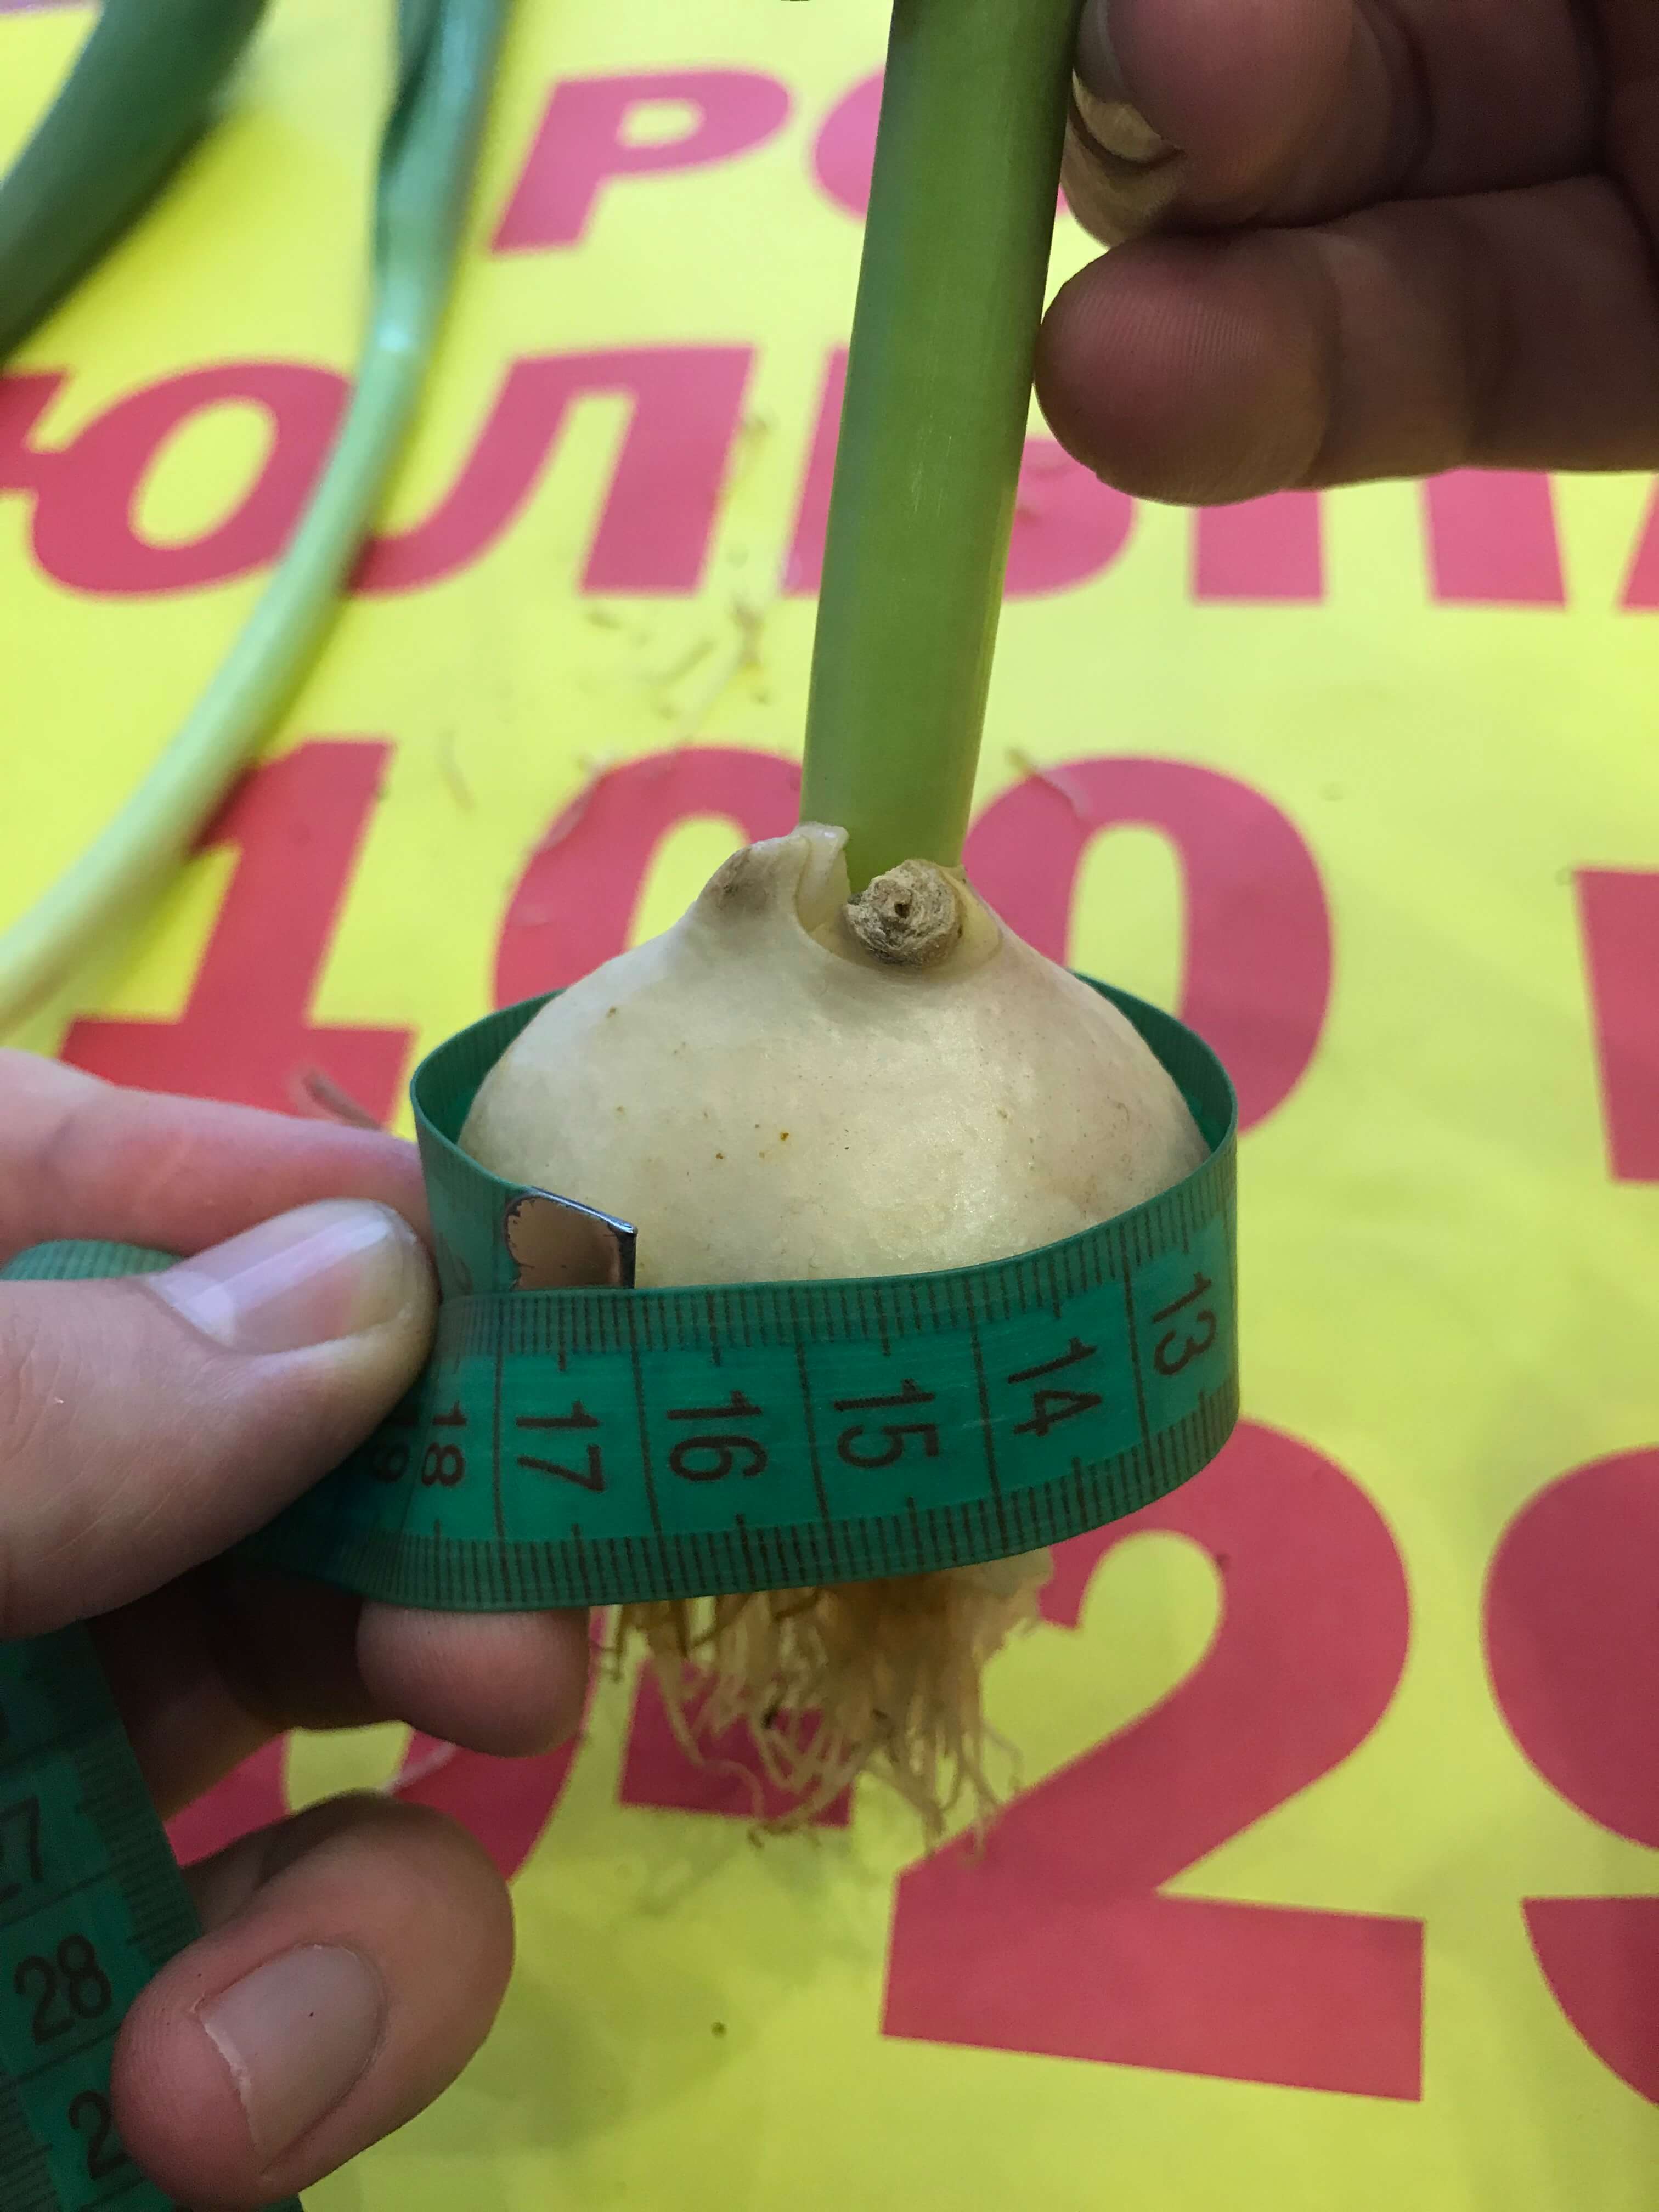 Замер диаметра луковицы тюльпана